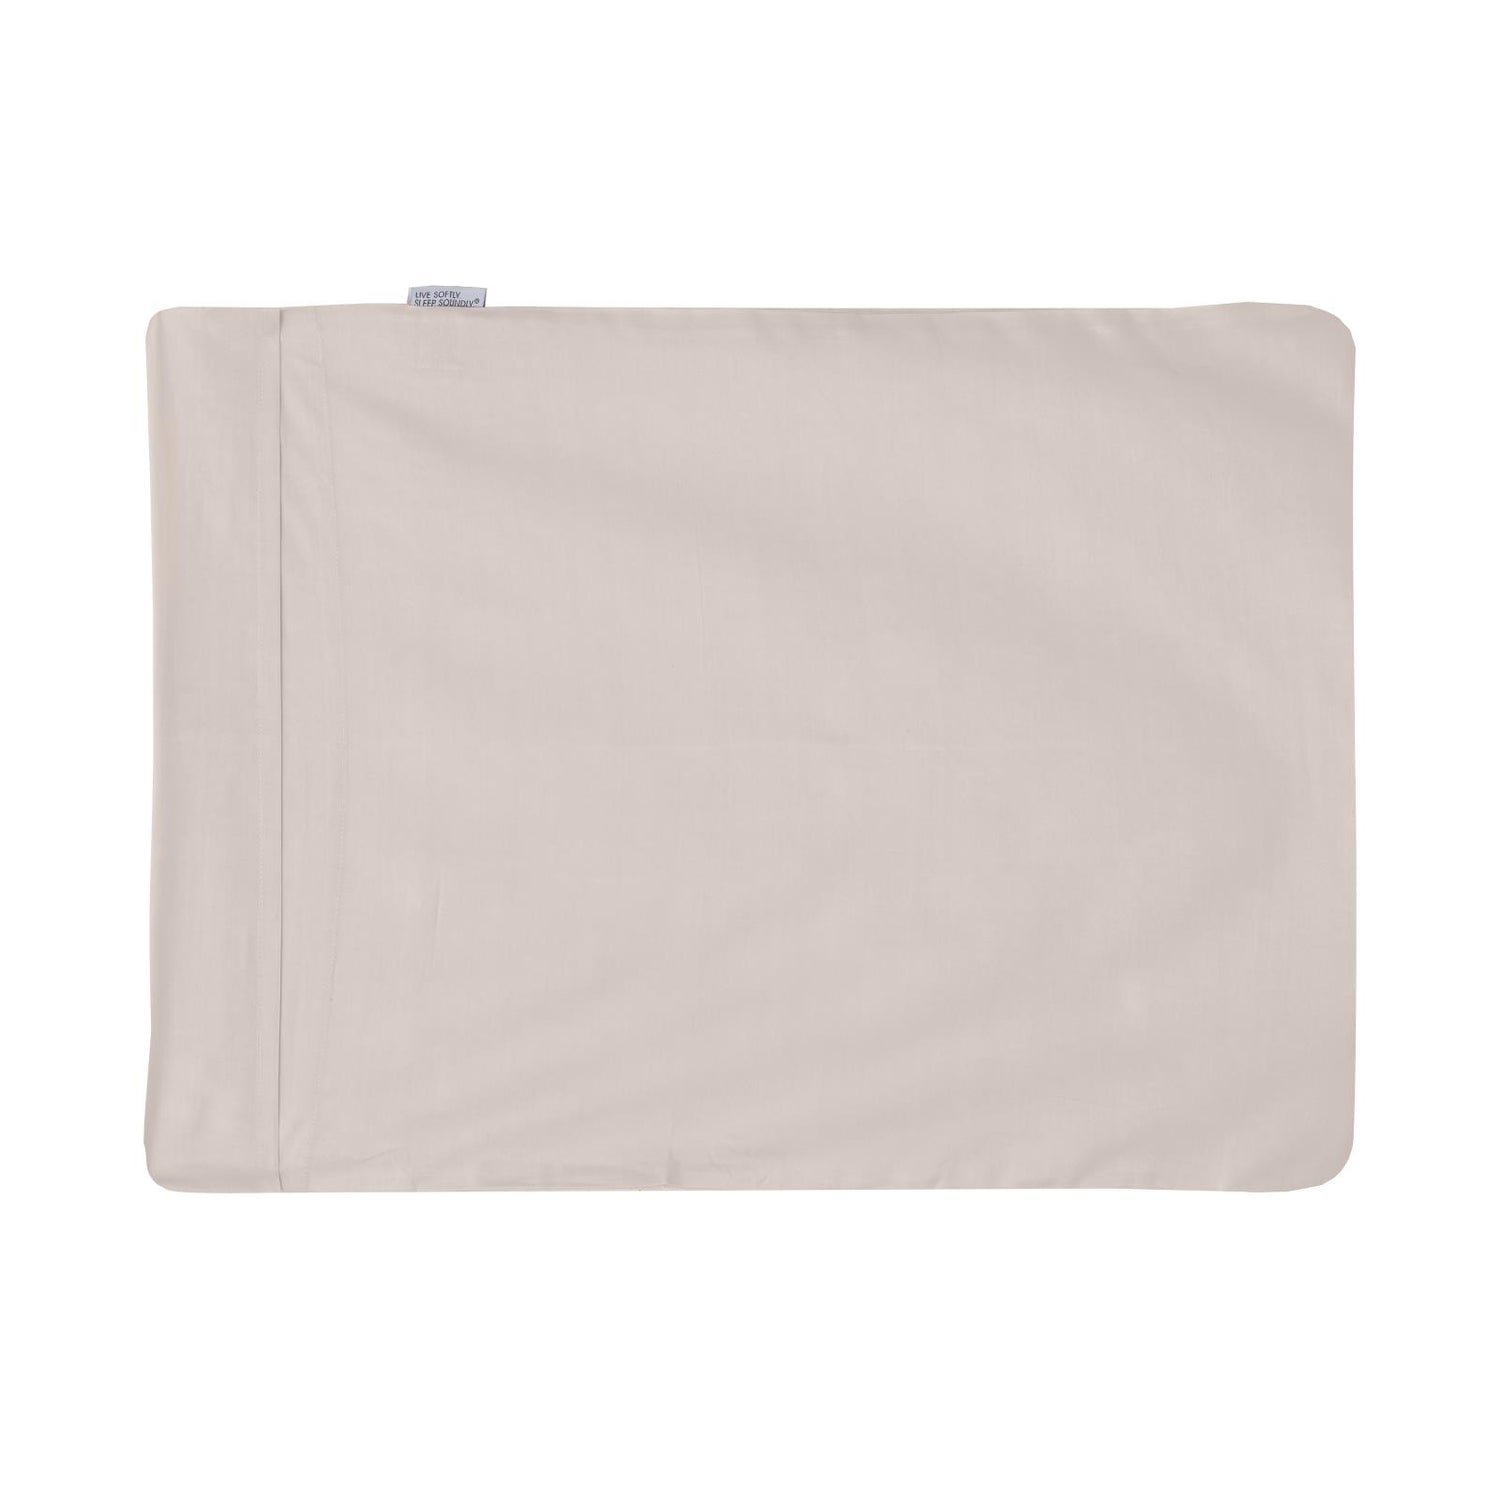 Foldover Pillowcase in Latte